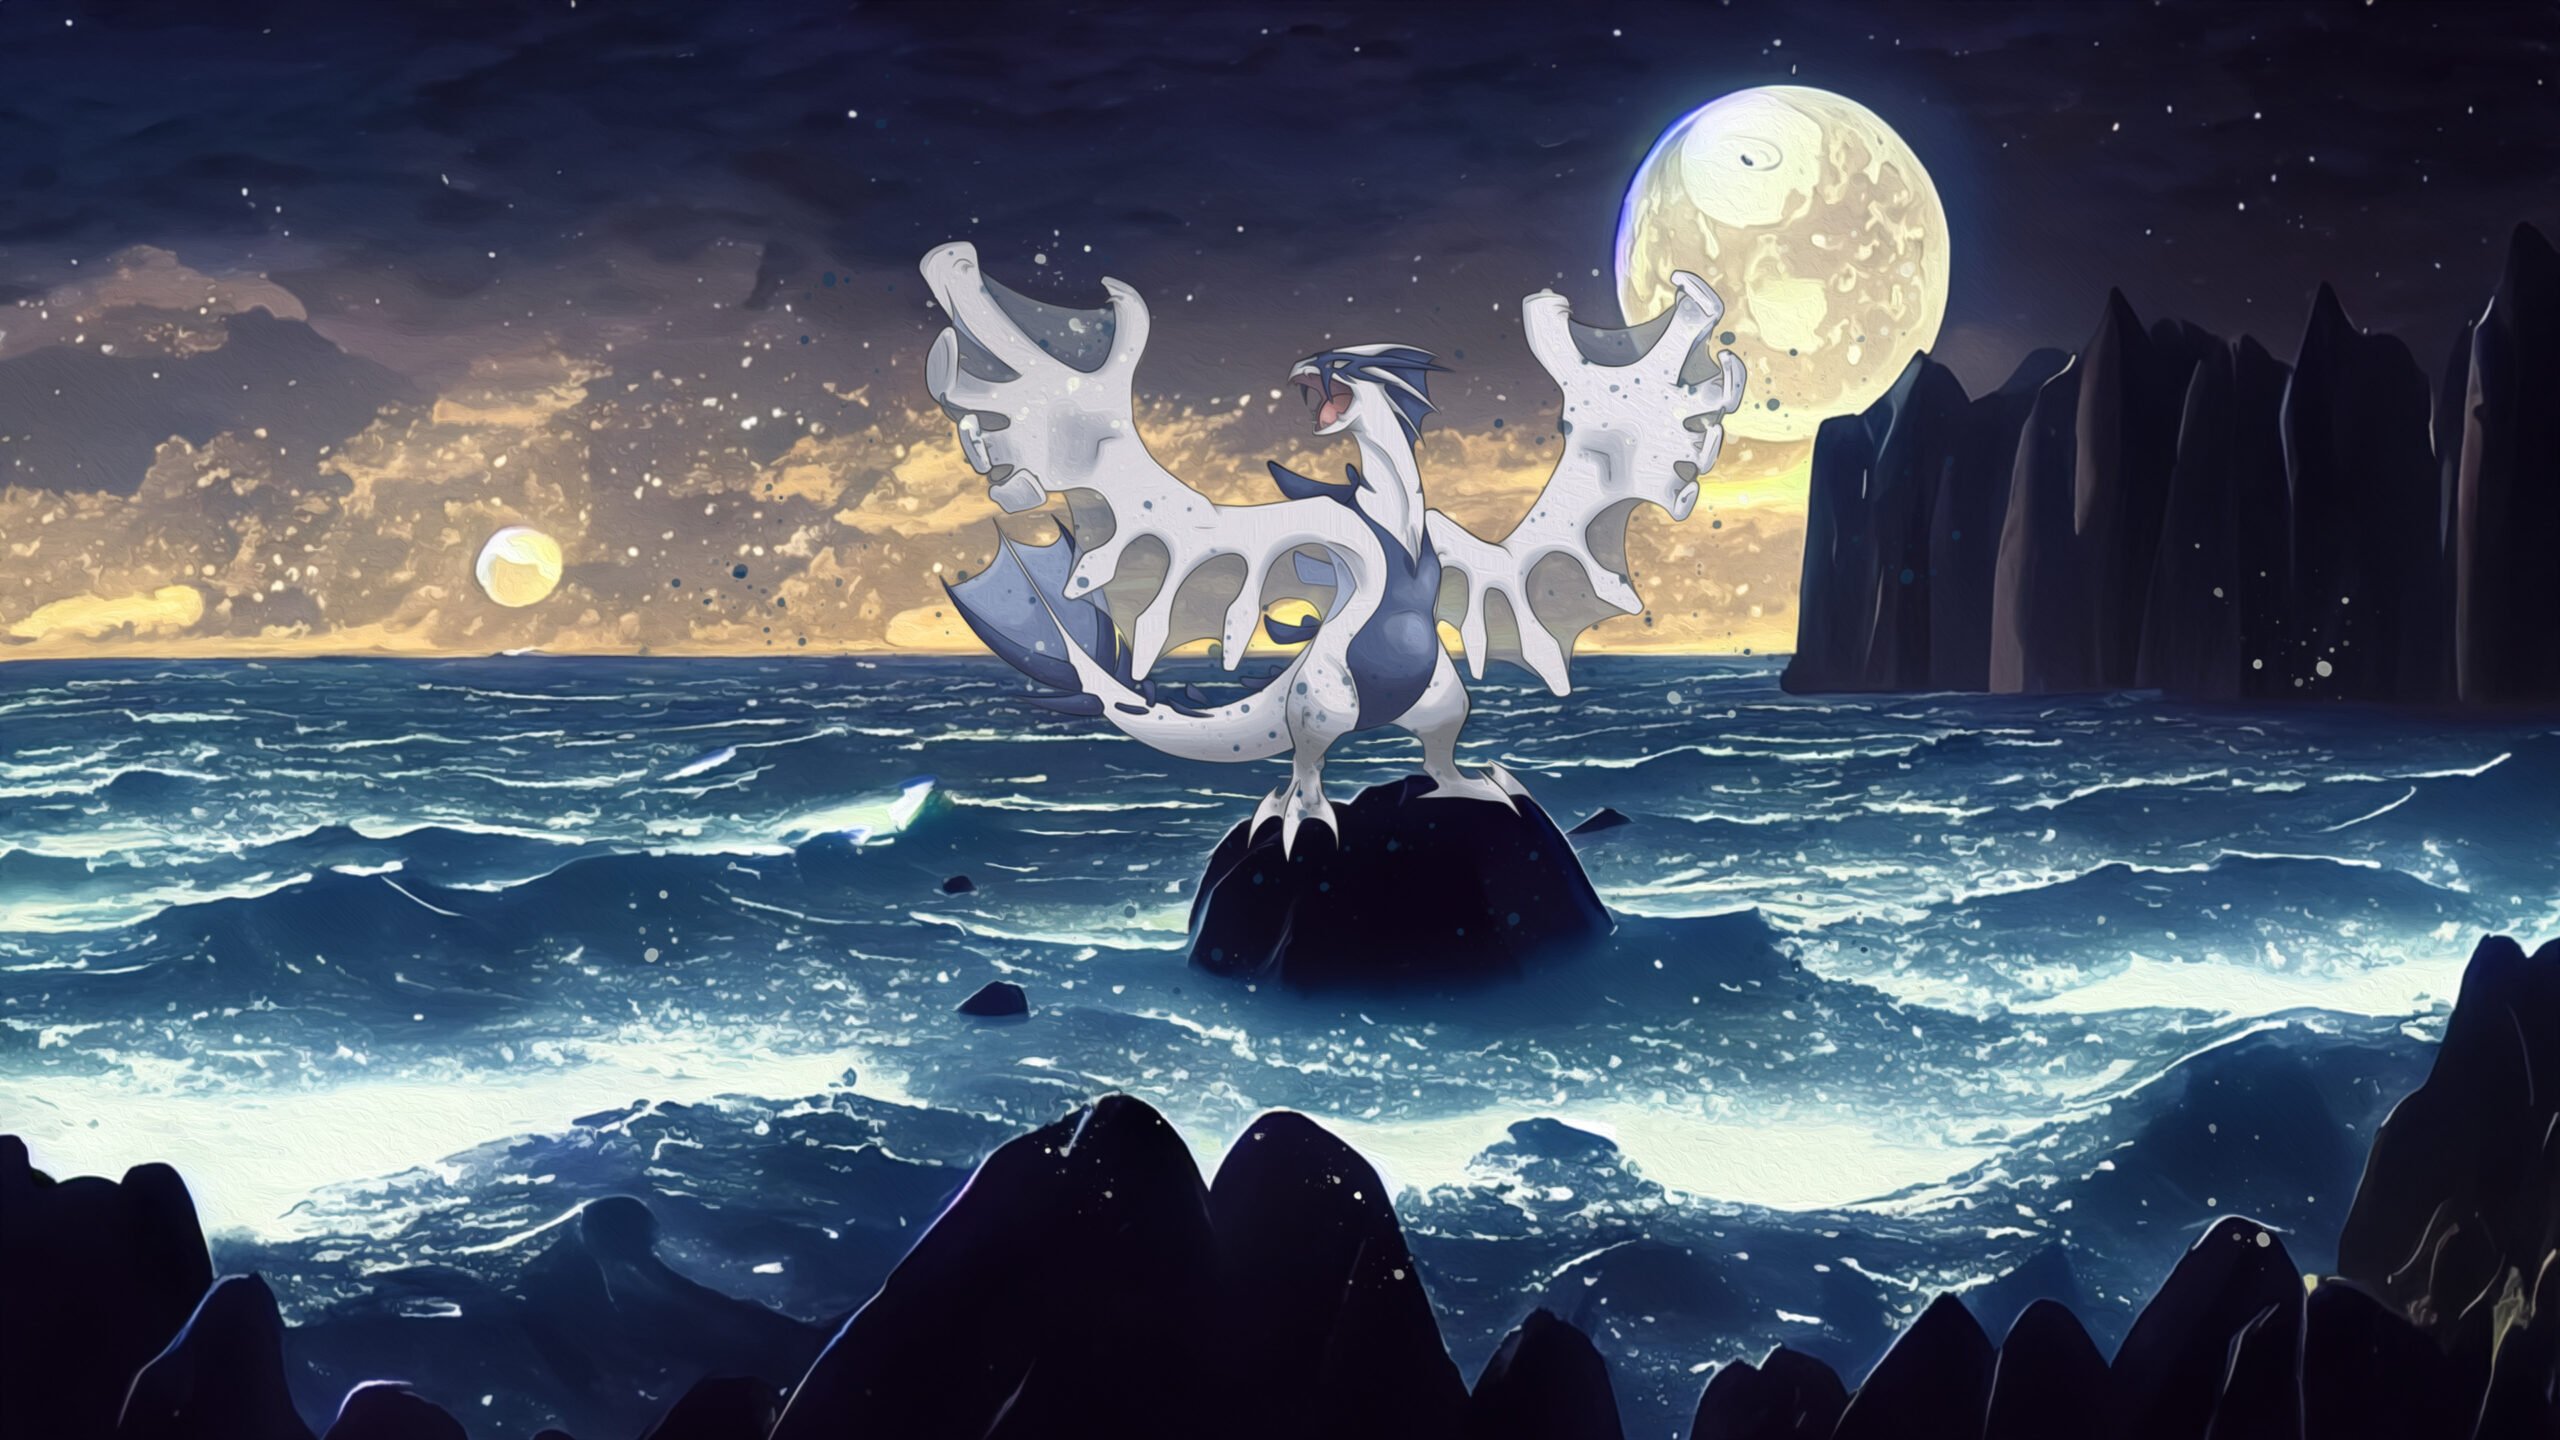 Lugia Sombre – fond d’écran Pokémon en 4K pour mobile et ordinateur